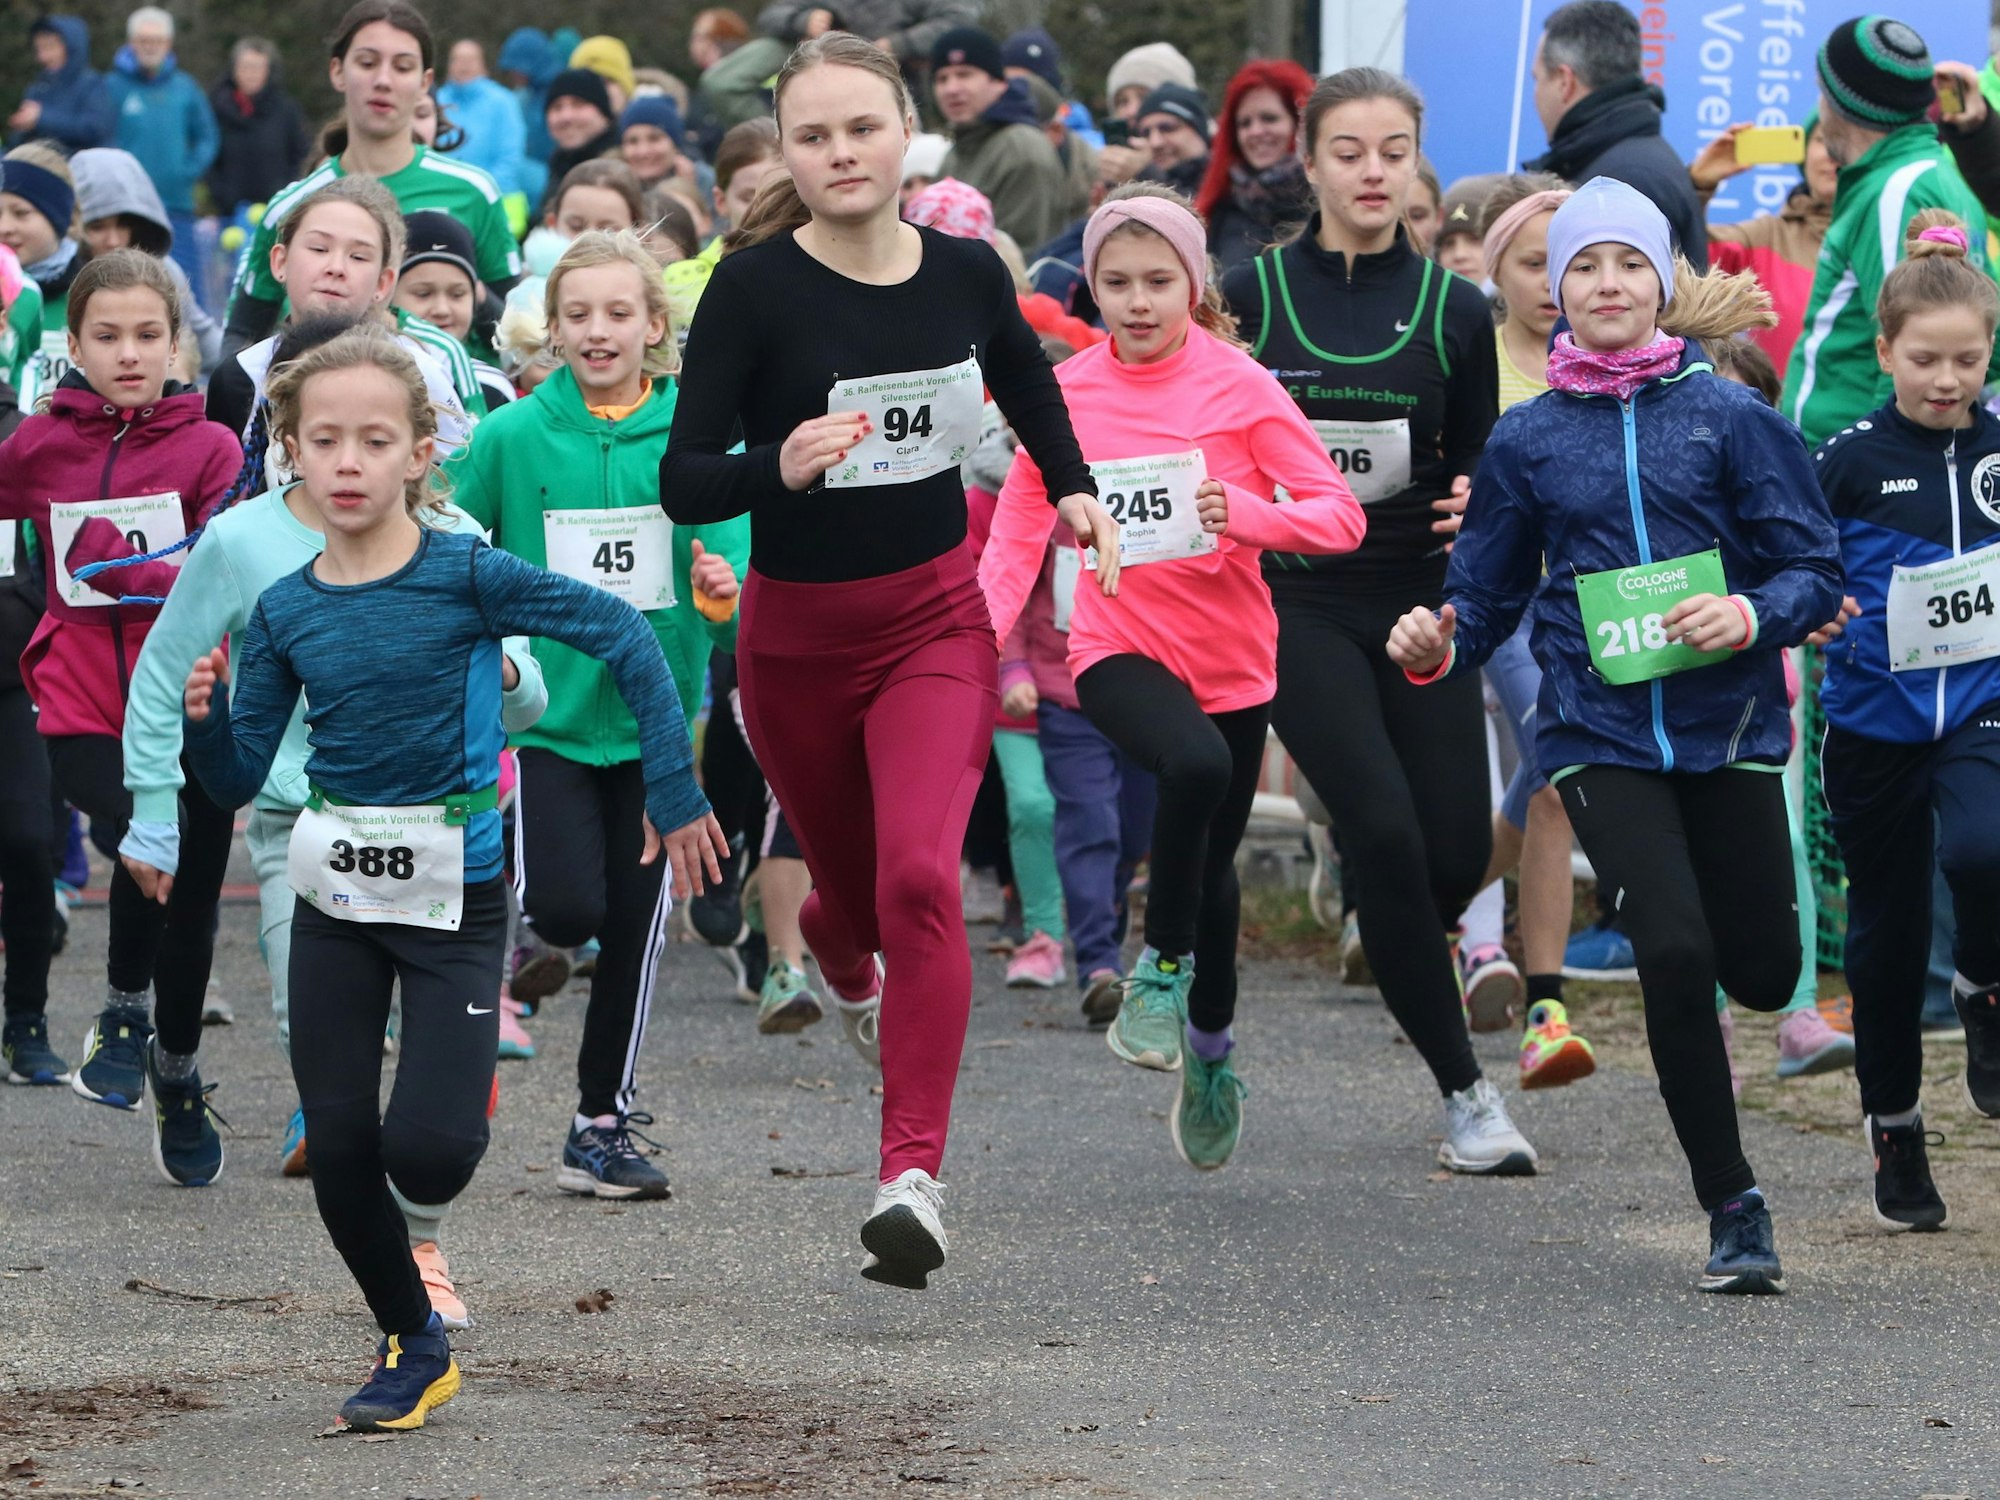 Das Bild zeigt den Lauf der Schülerinnen wenige Meter nach dem Startschuss.